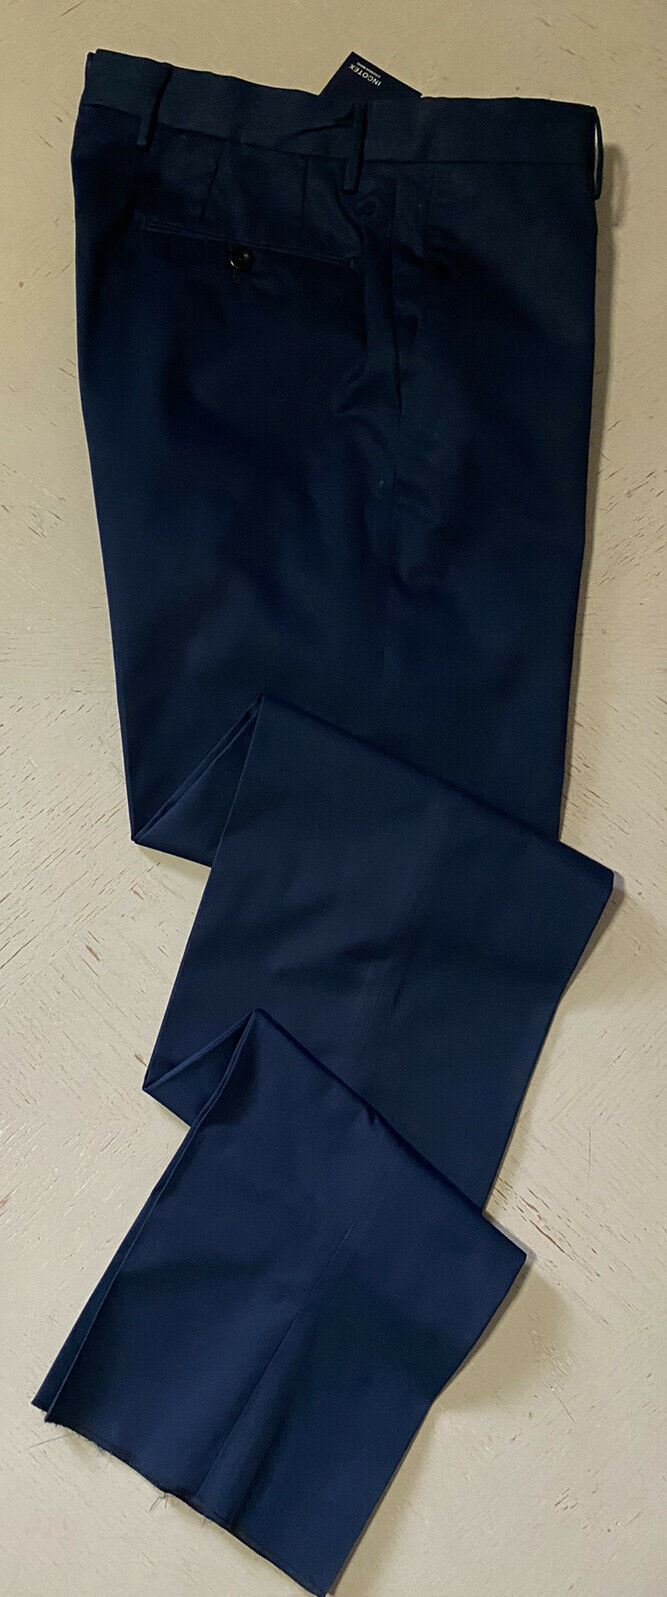 Мужские классические брюки NWT Incotex темно-синие 34 США (50 евро)